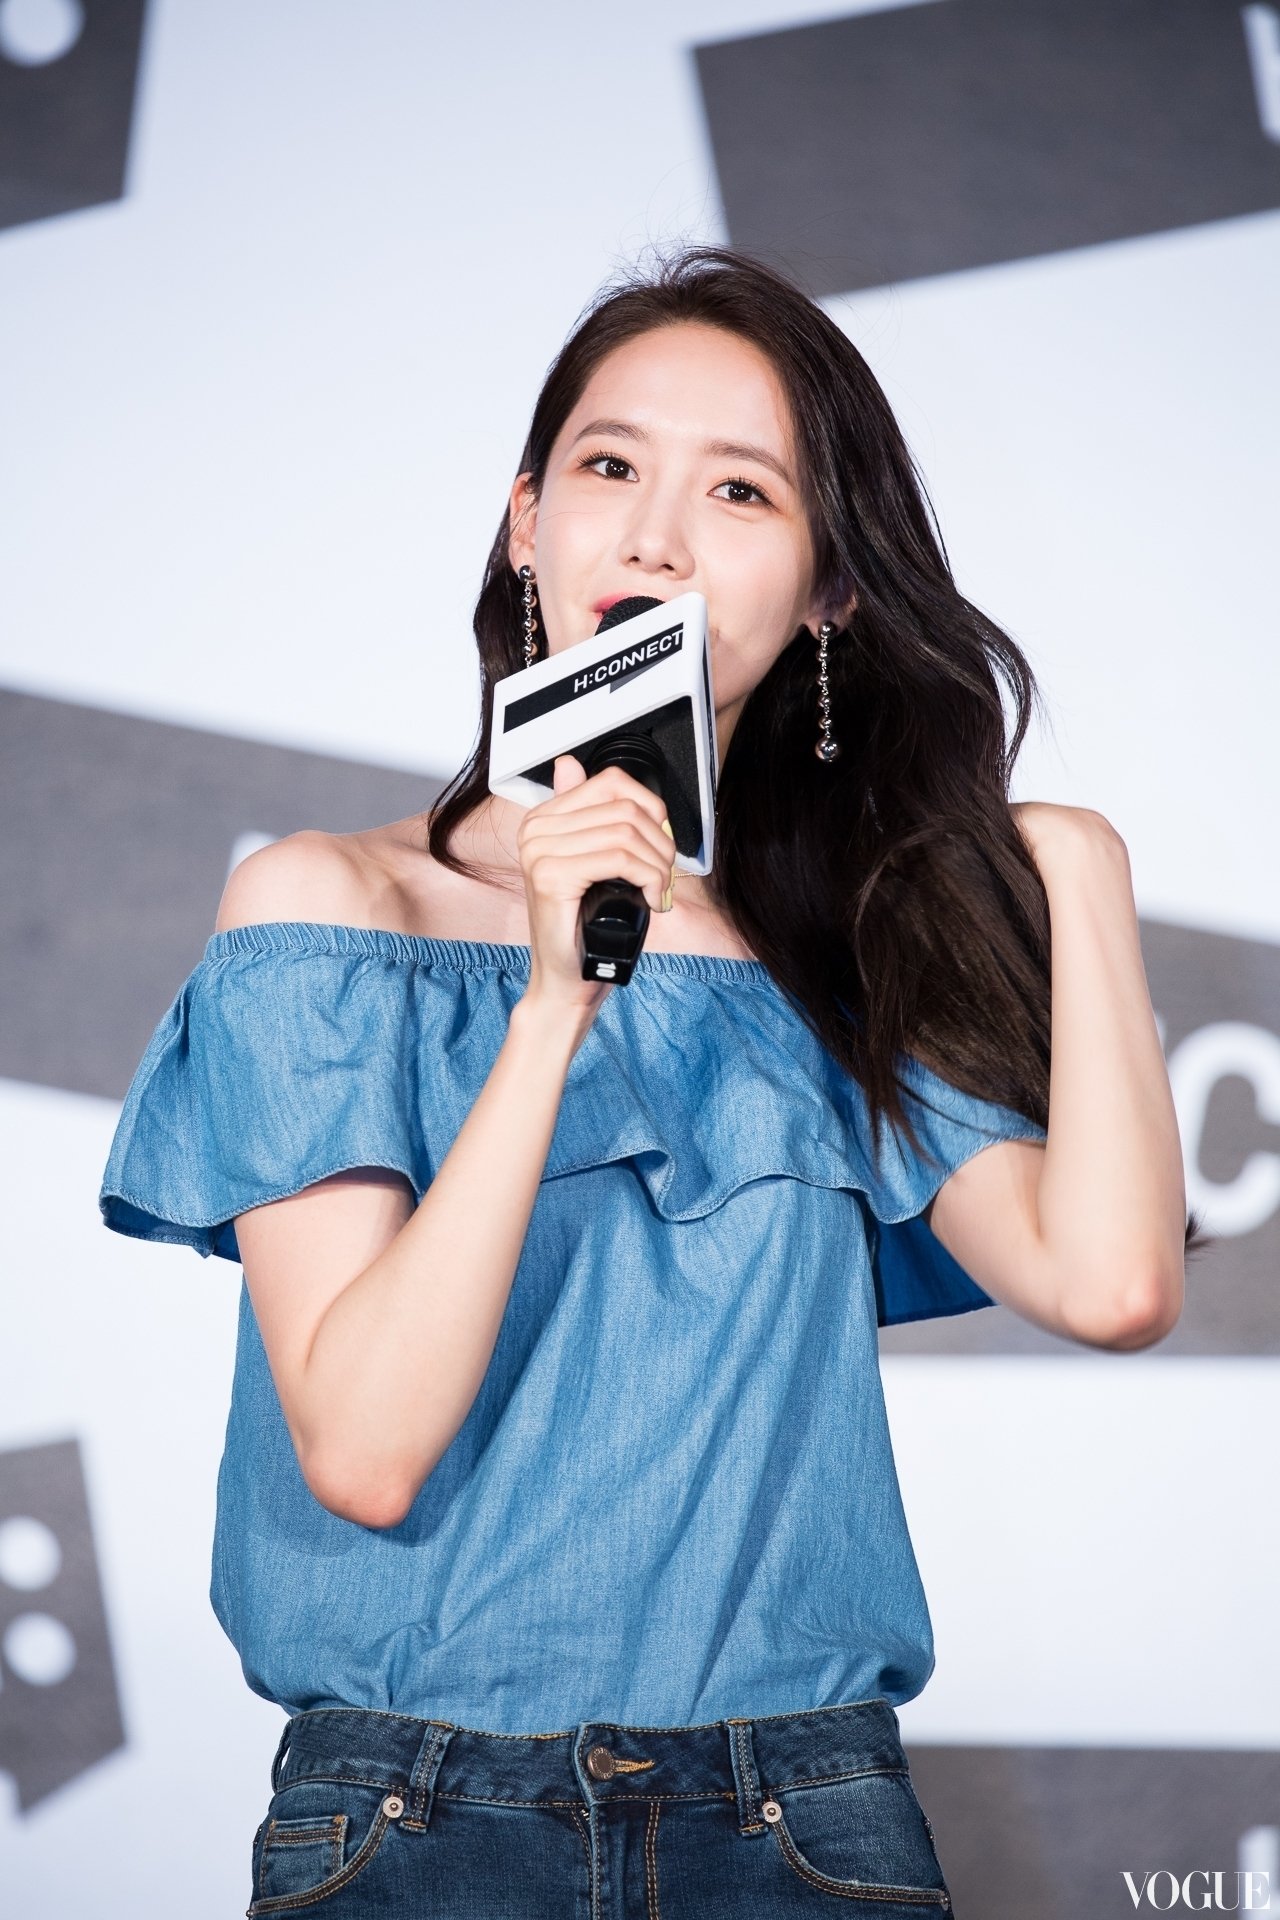 [PIC][22-07-2017]YoonA khởi hành đi Đài Loan để tham dự buổi Fanmeeting cho thương hiệu "H:CONNECT" vào hôm nay - Page 3 ZsLEc22thG-3000x3000